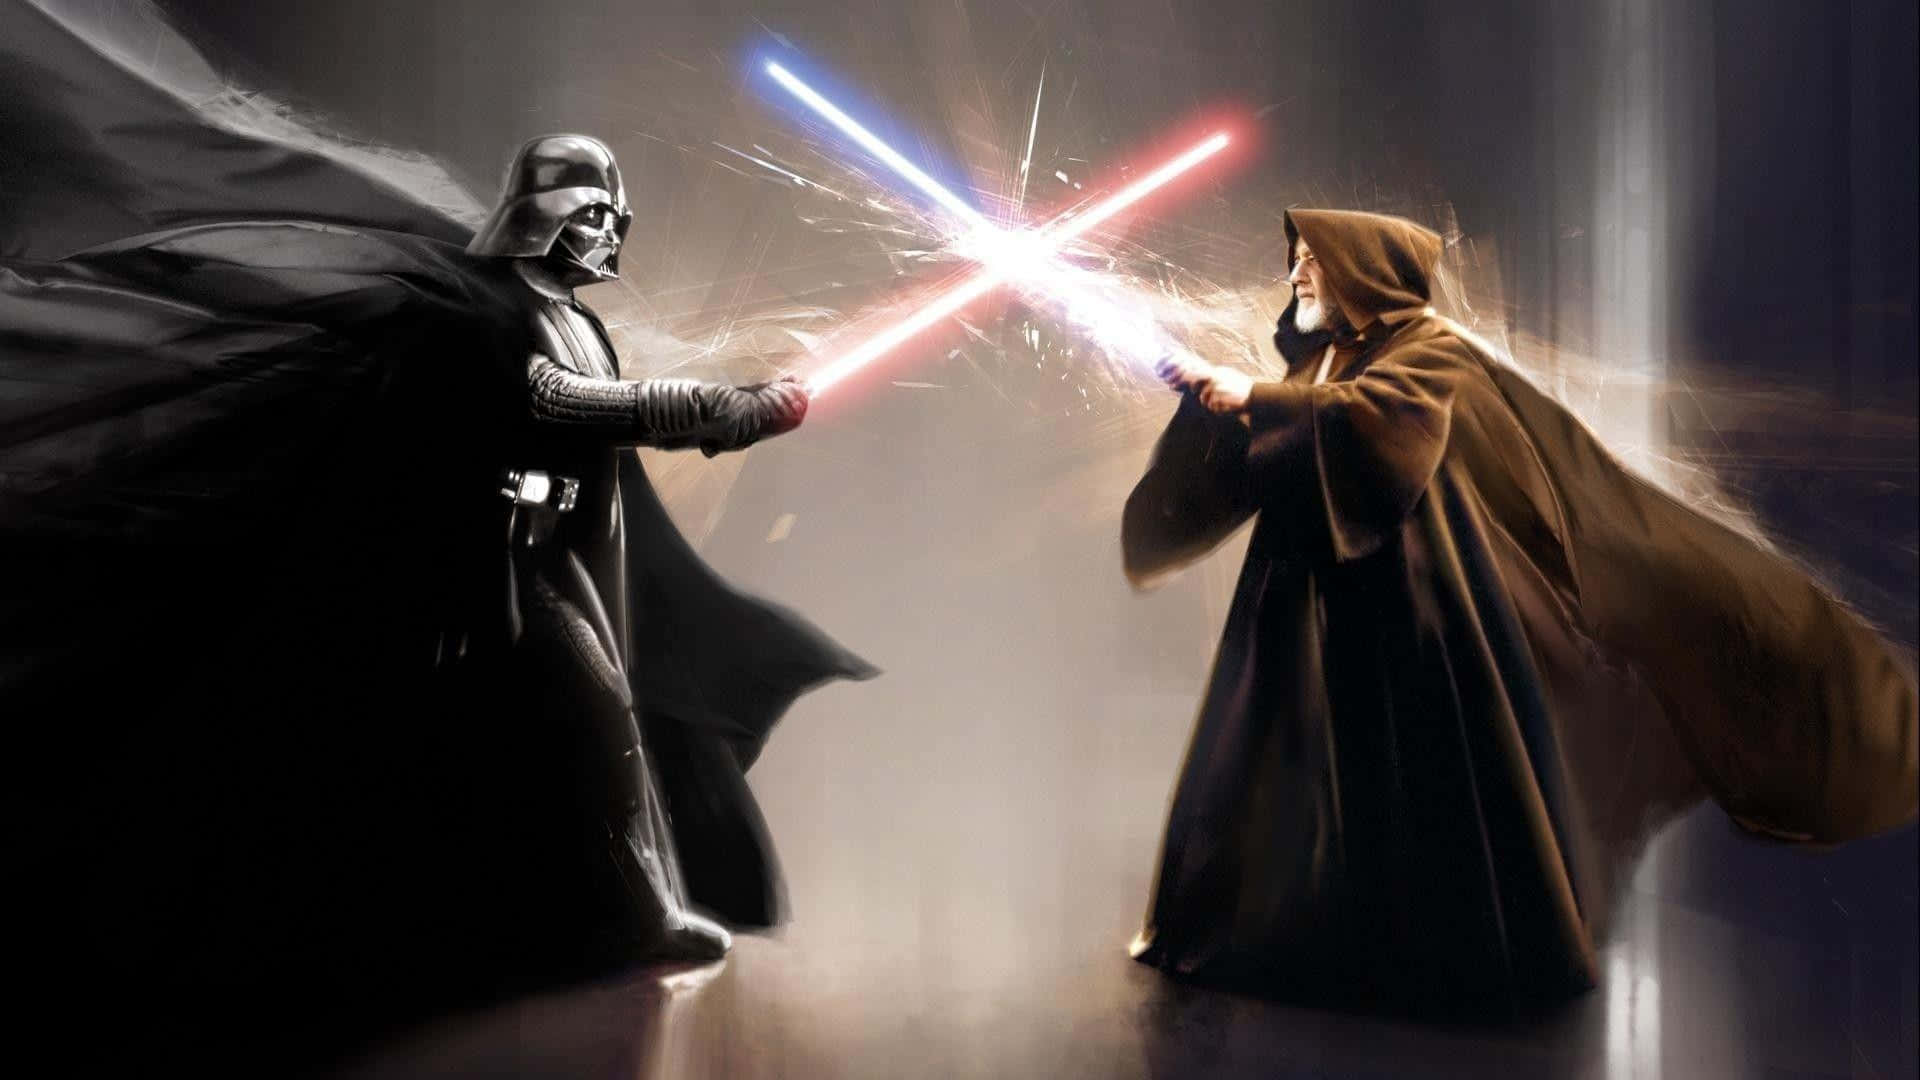 Two Jedi warriors clash in a fierce lightsaber duel Wallpaper